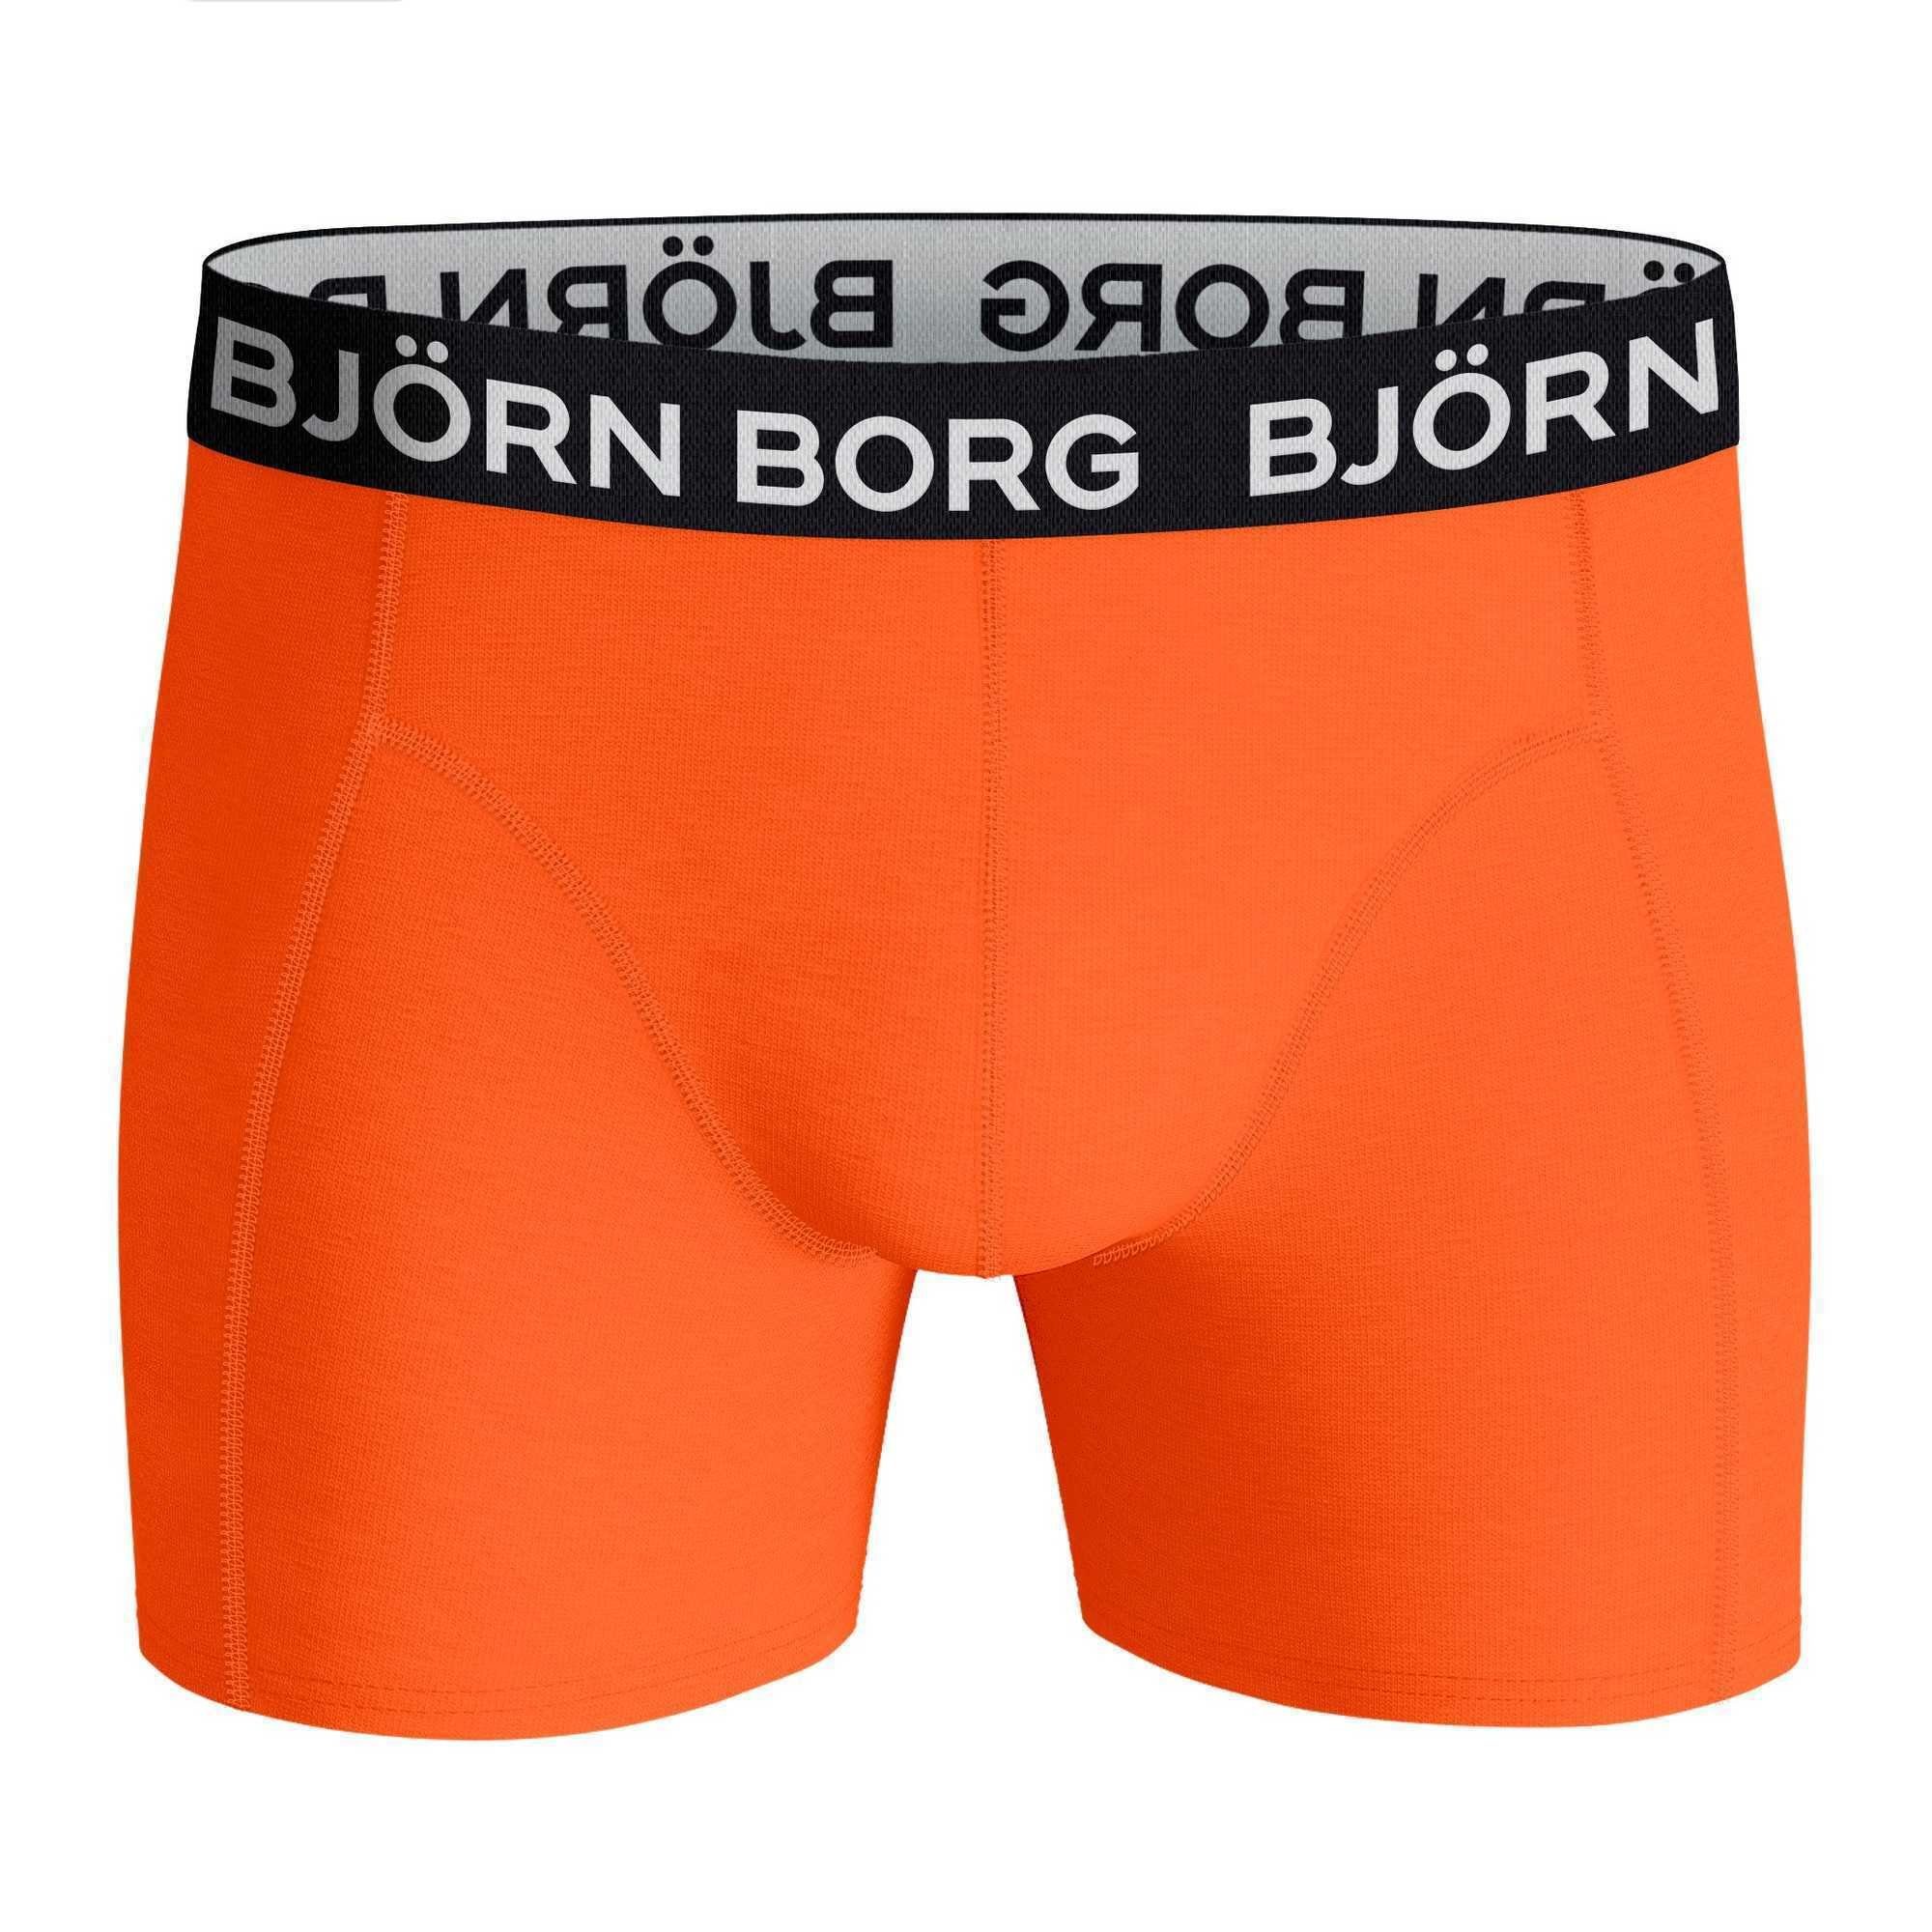 Herren Unterwäsche 5er Borg Björn Boxer - Hellblau/Dunkelblau/Orange/Dunkelgrau Pack Boxershorts,